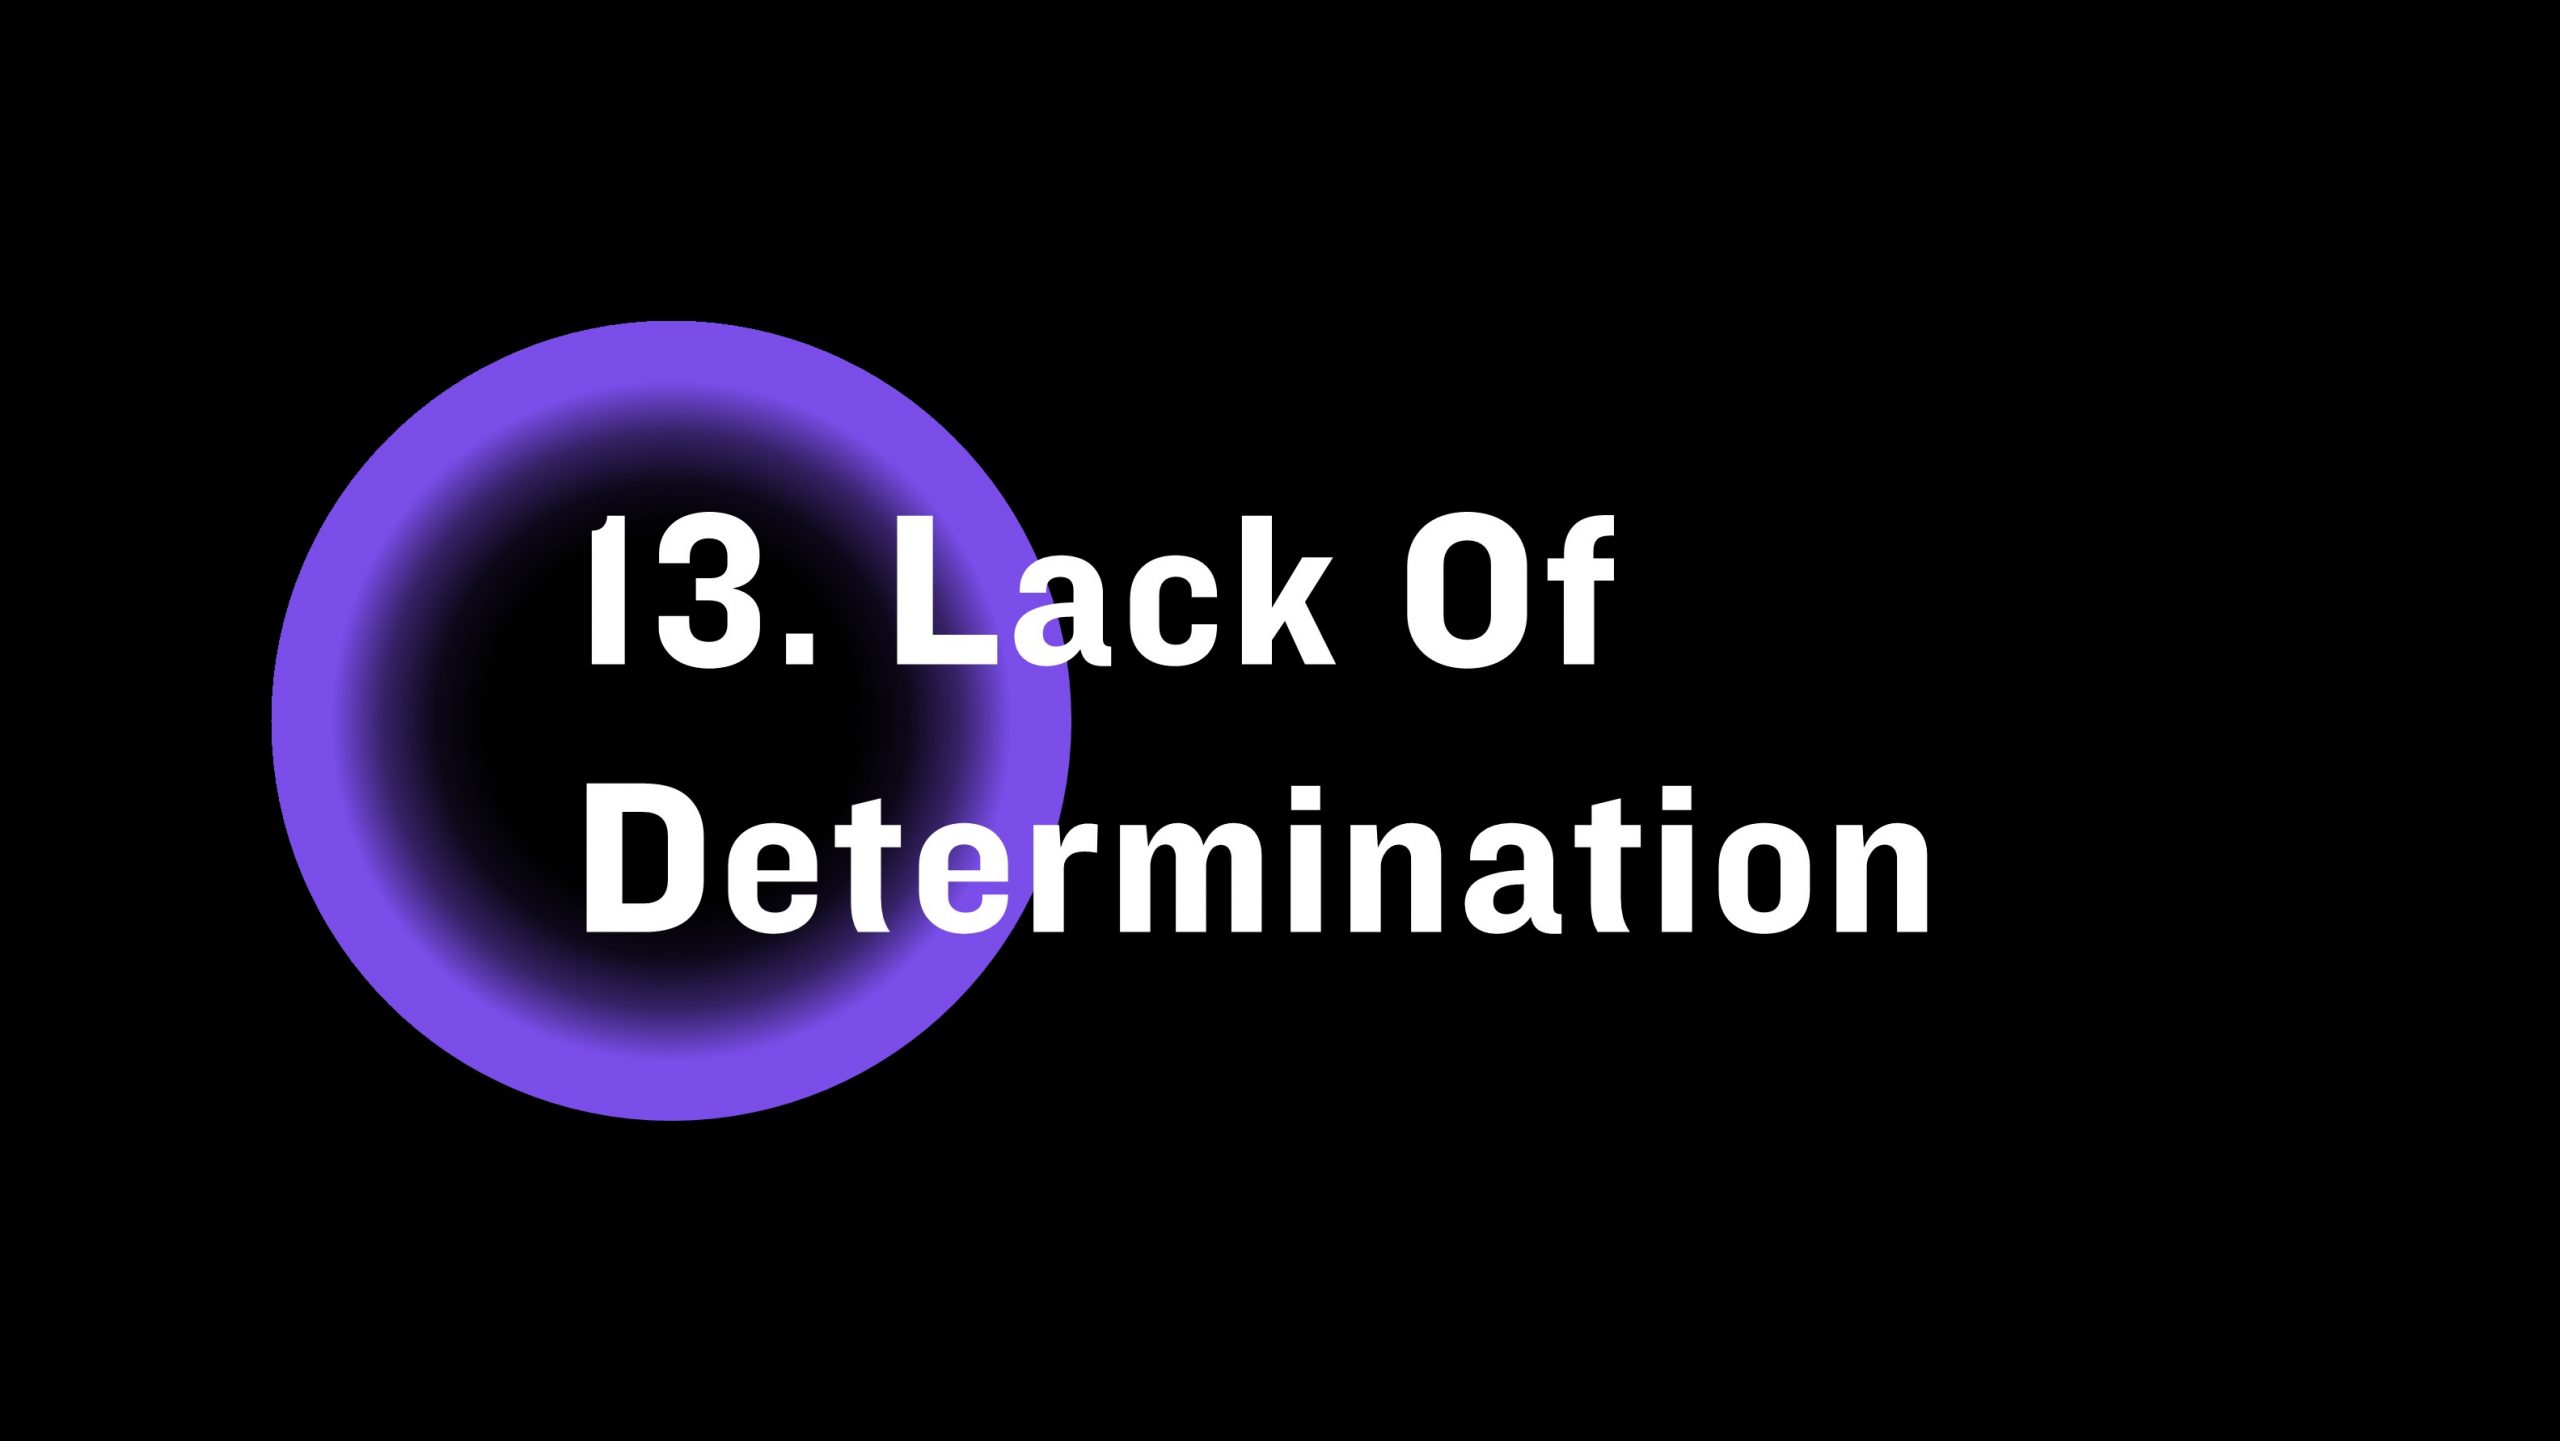 Lack of determination